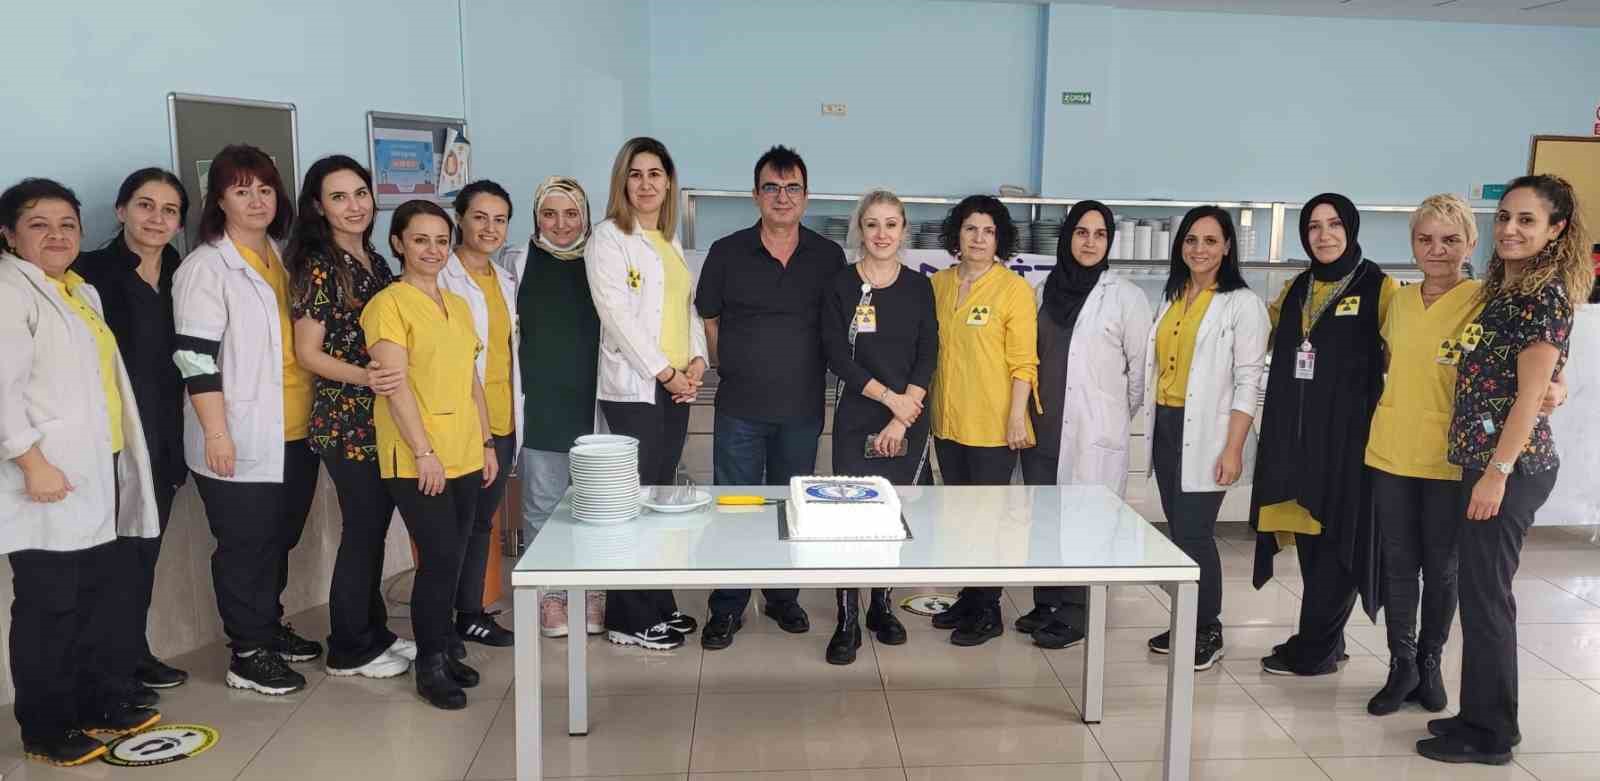 Radyoloji çalışanları ’Dünya Radyoloji Günü’ için pasta kesti